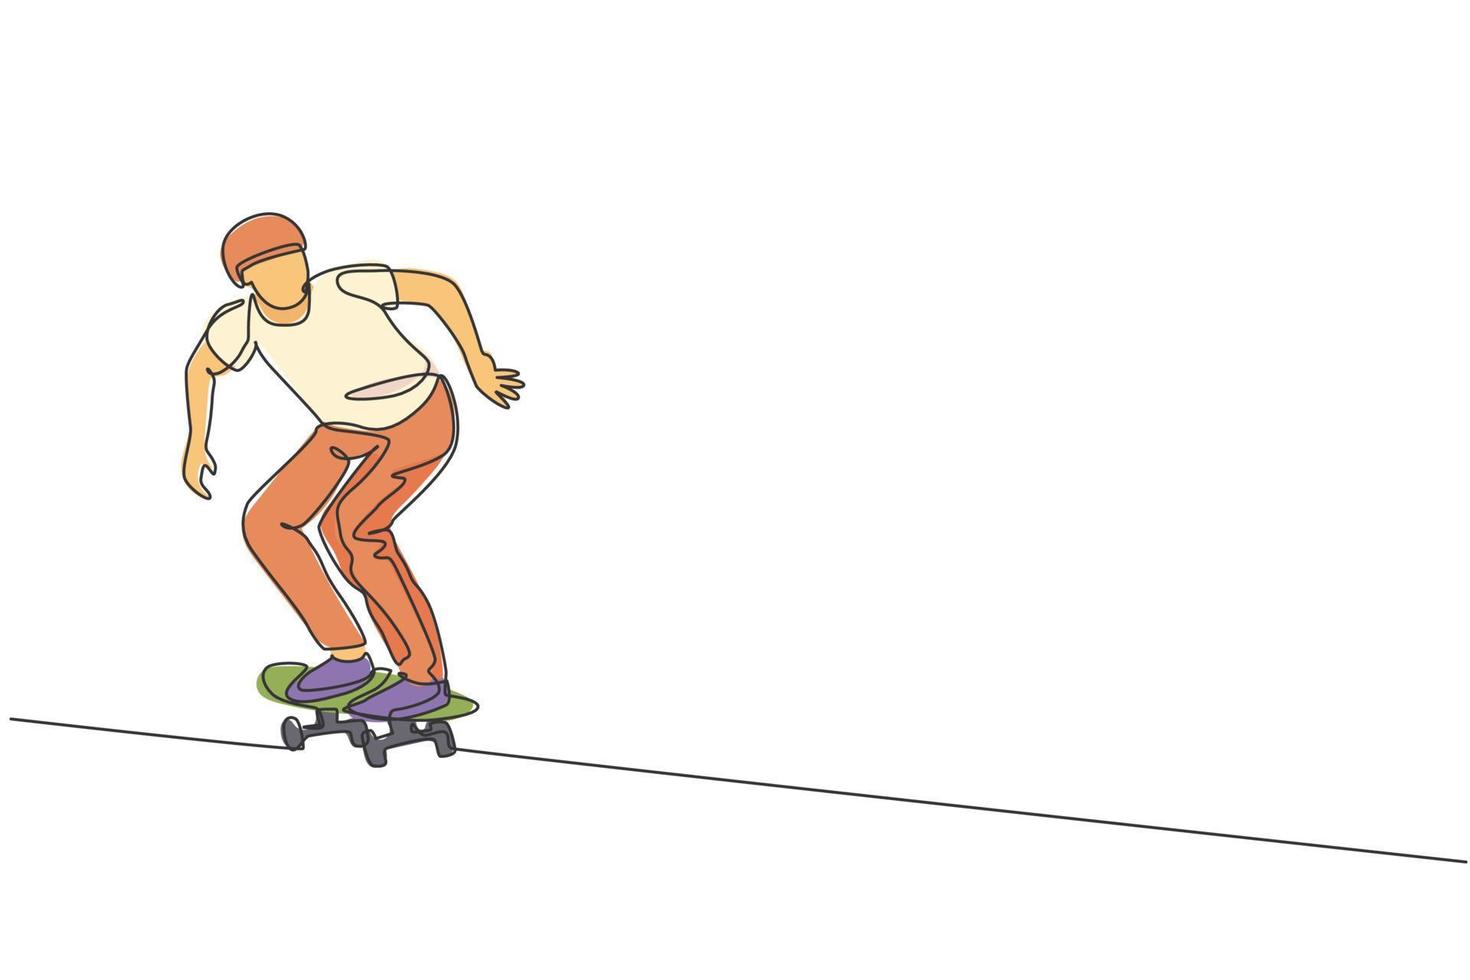 een doorlopende lijntekening van een jonge coole skateboarder die op een skateboard rijdt en een truc doet in het skatepark. extreme tiener sport concept. dynamische enkele lijn tekenen ontwerp grafische vectorillustratie vector